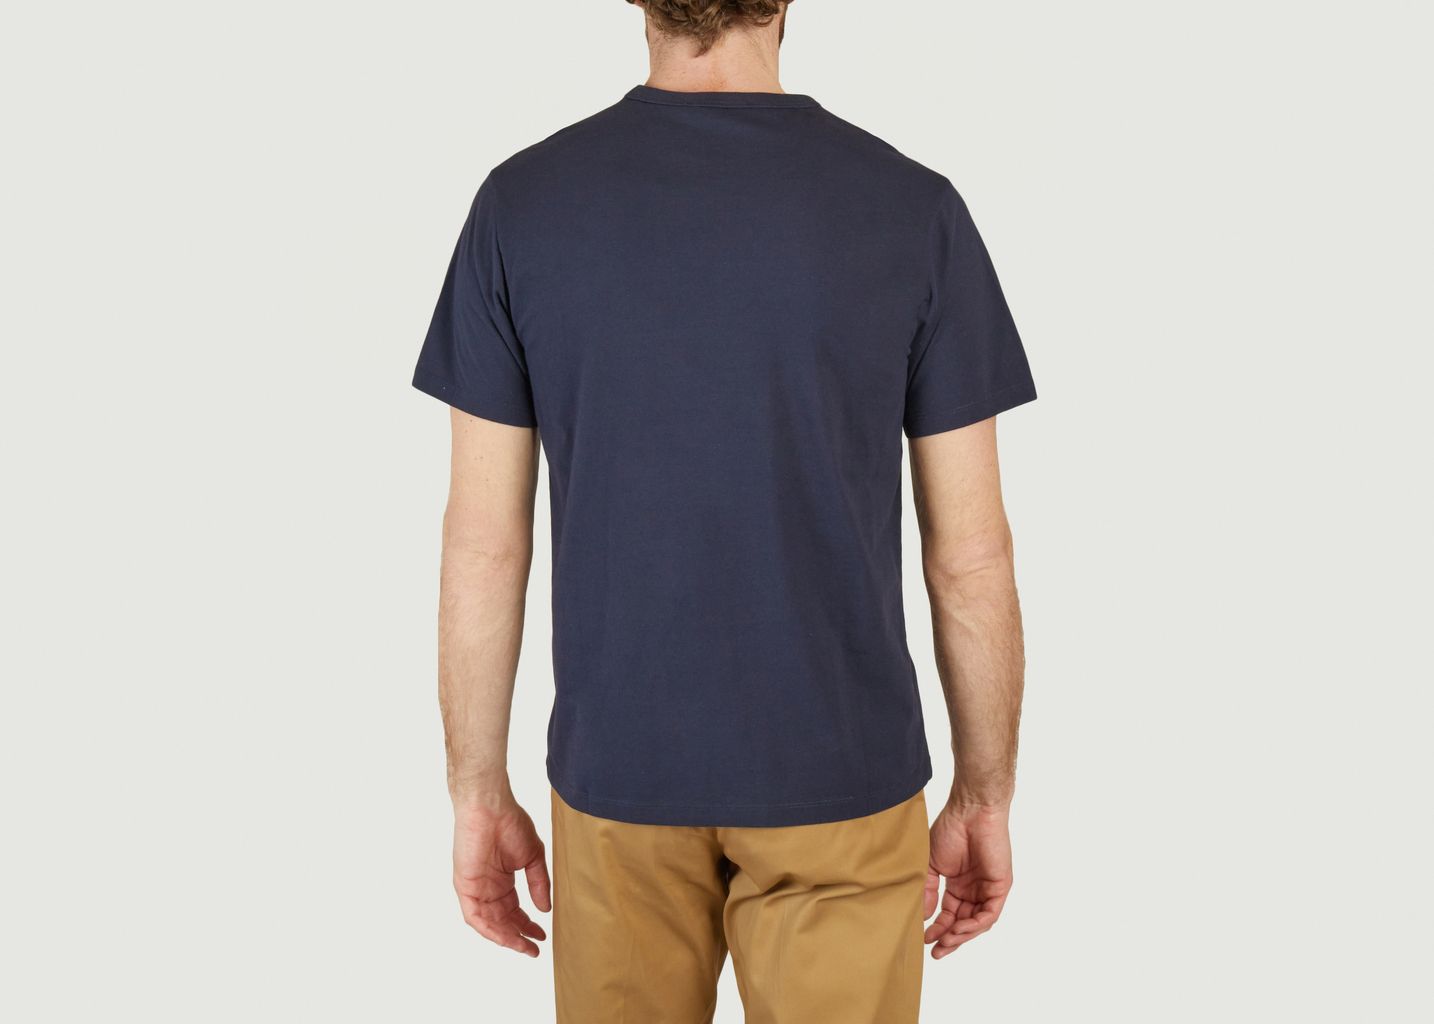 Tricolor Fox Patch T-shirt - Maison Kitsuné